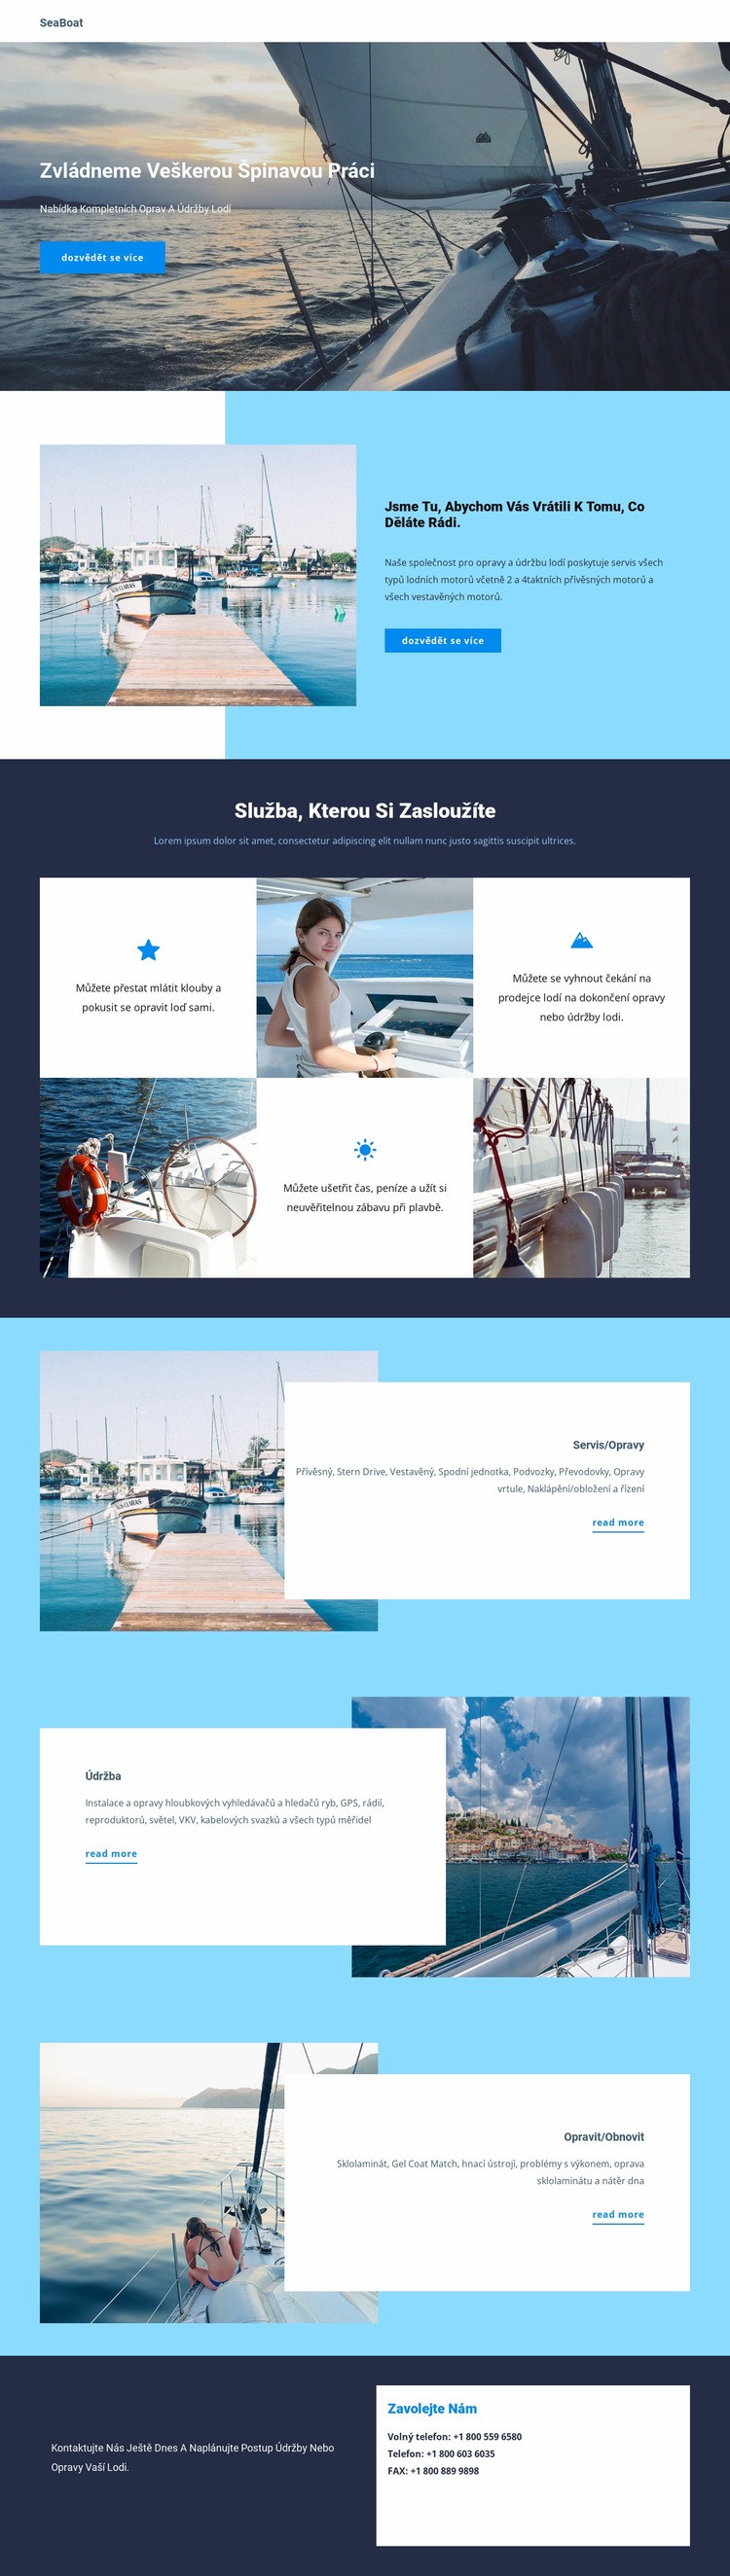 Cestujte na Seaboat Šablona HTML